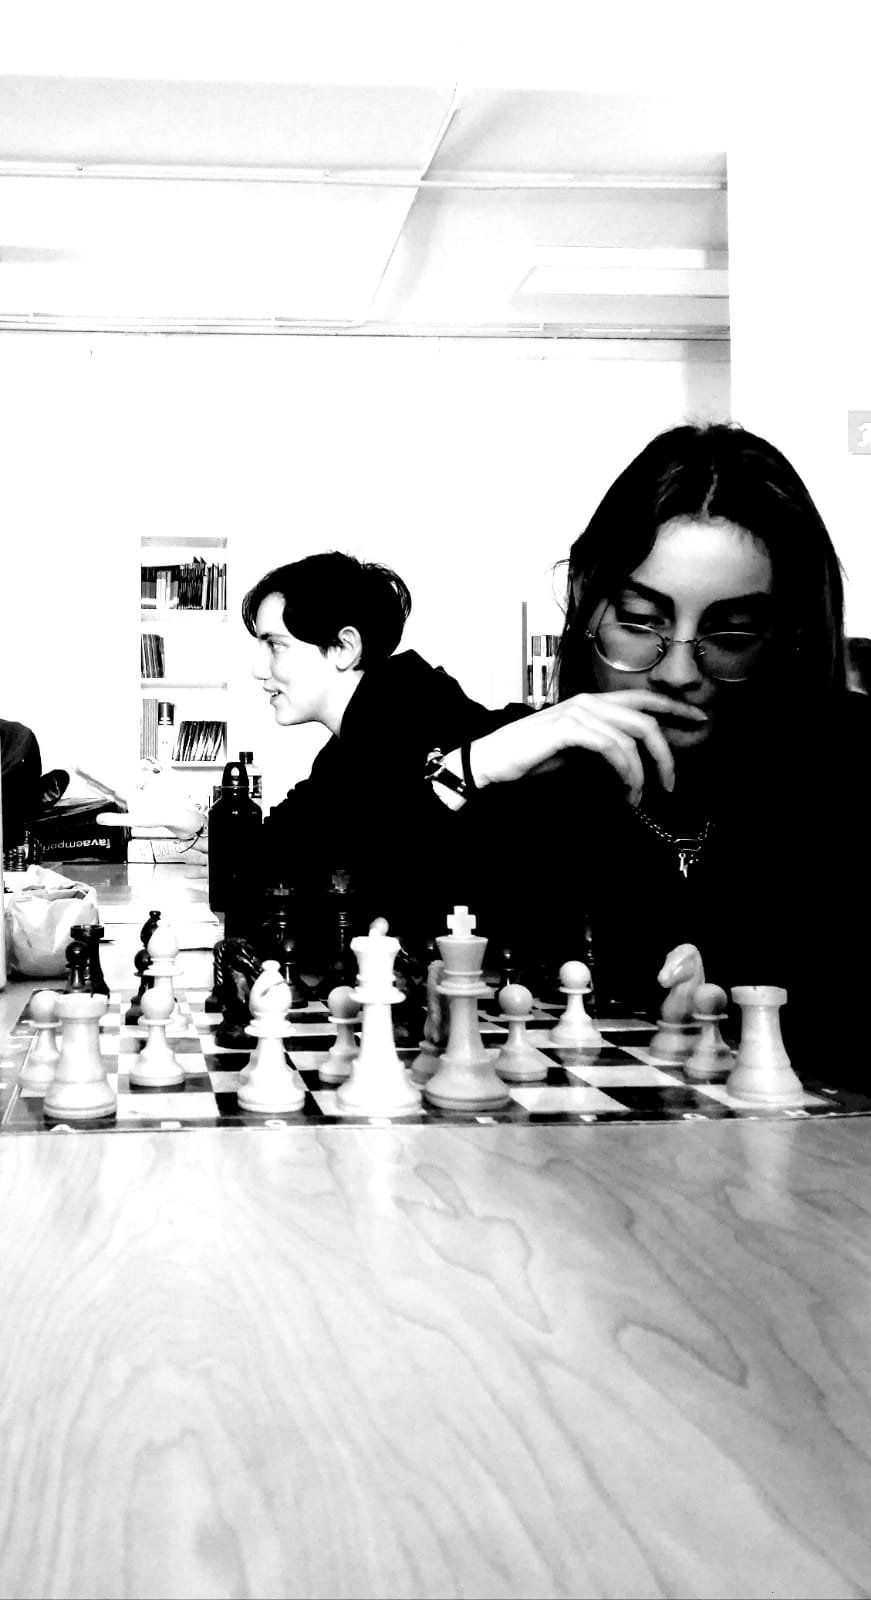 Club degli scacchi